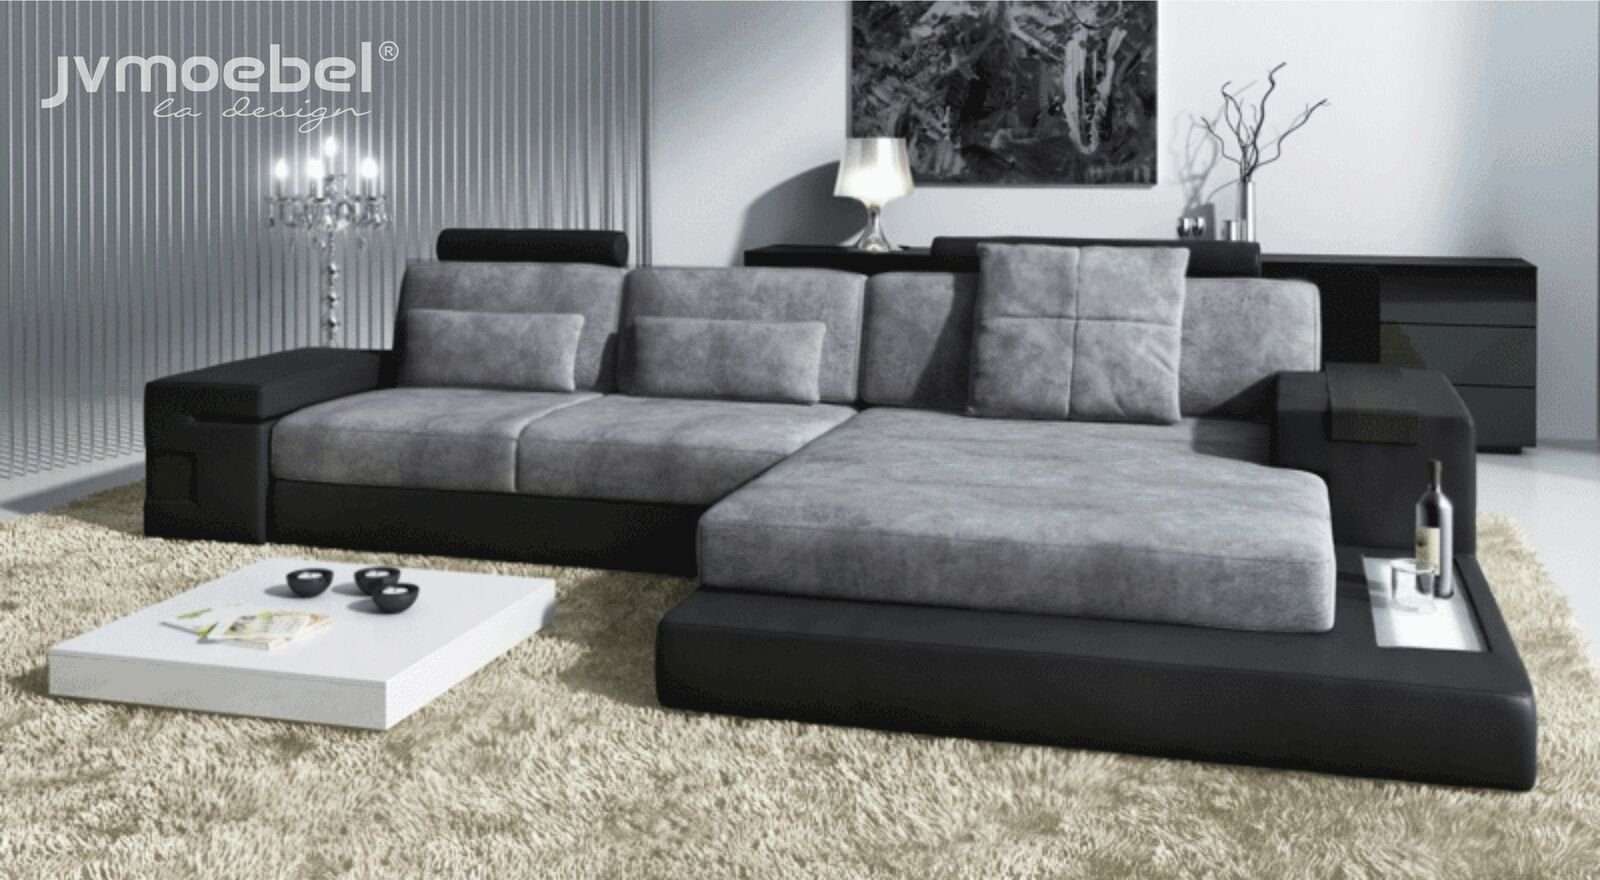 JVmoebel Ecksofa Ecksofa Wohnzimmer L-Form in Polster Design, Grau/Schwarz Made Sofa TextilLeder Europe